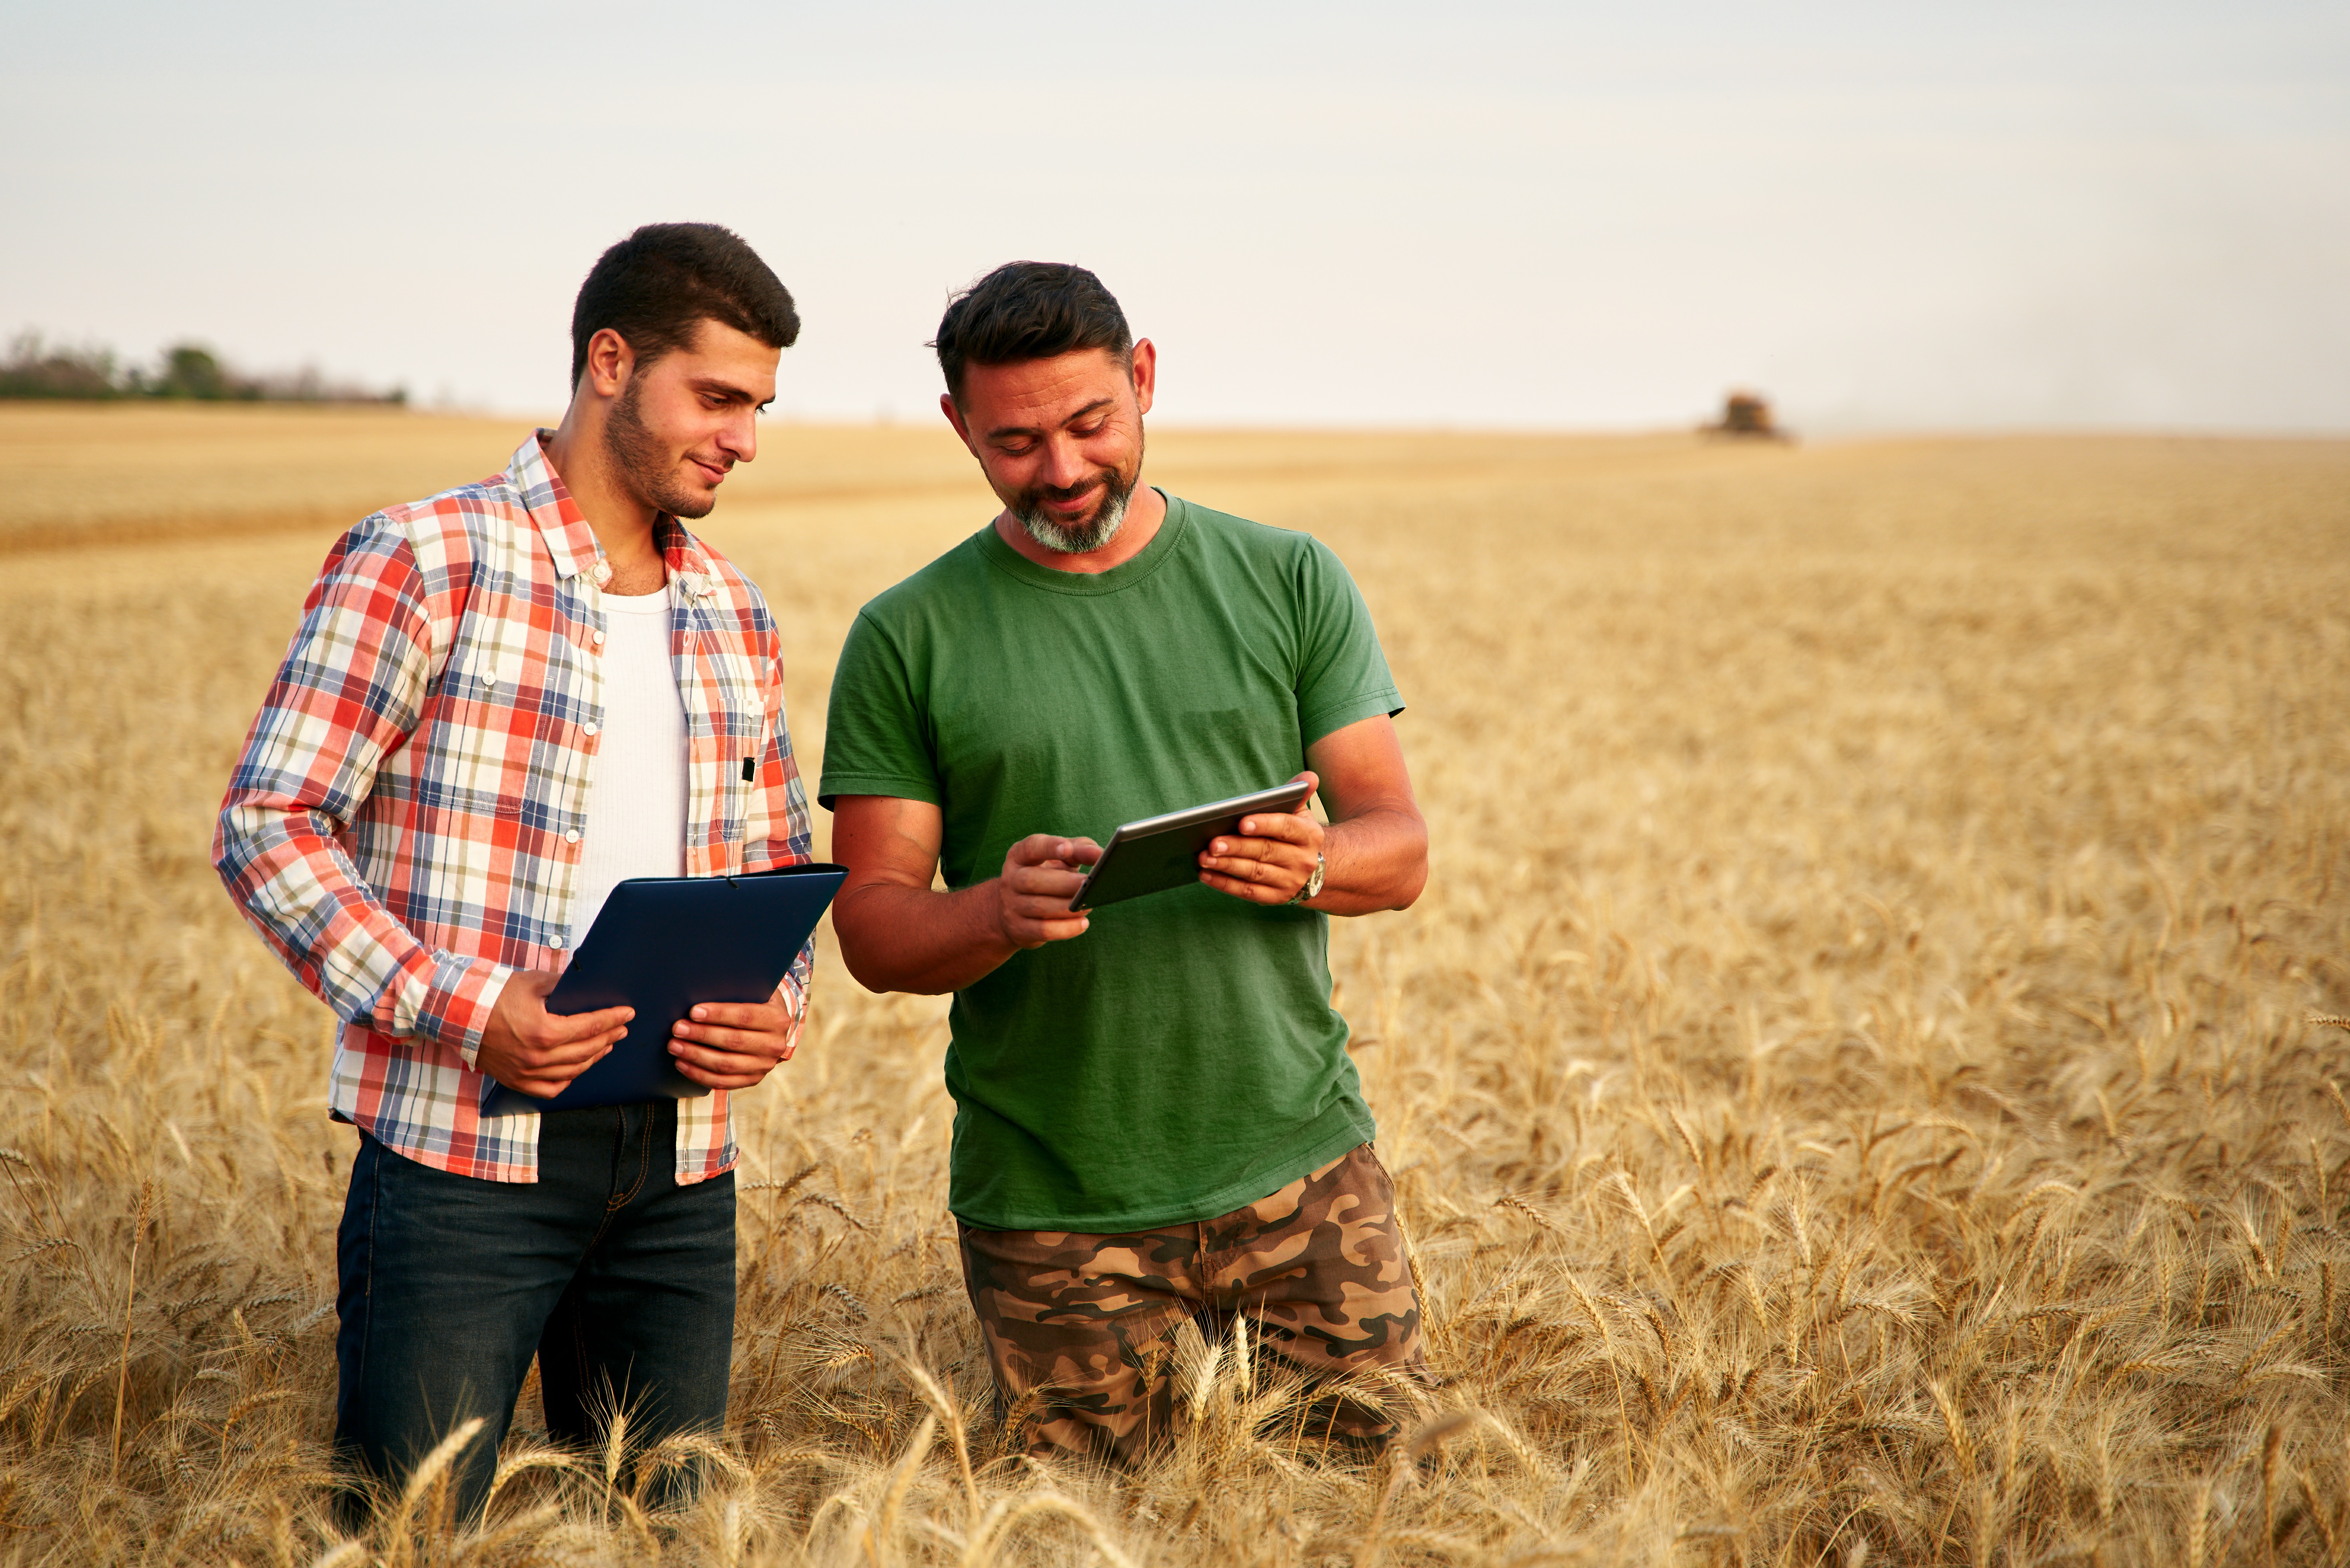 δύο νέοι άνδρες σε έναν τομέα καλλιέργειας εξετάζουν τα πέλματα τους για να προγραμματίσουν τις εργασίες τους